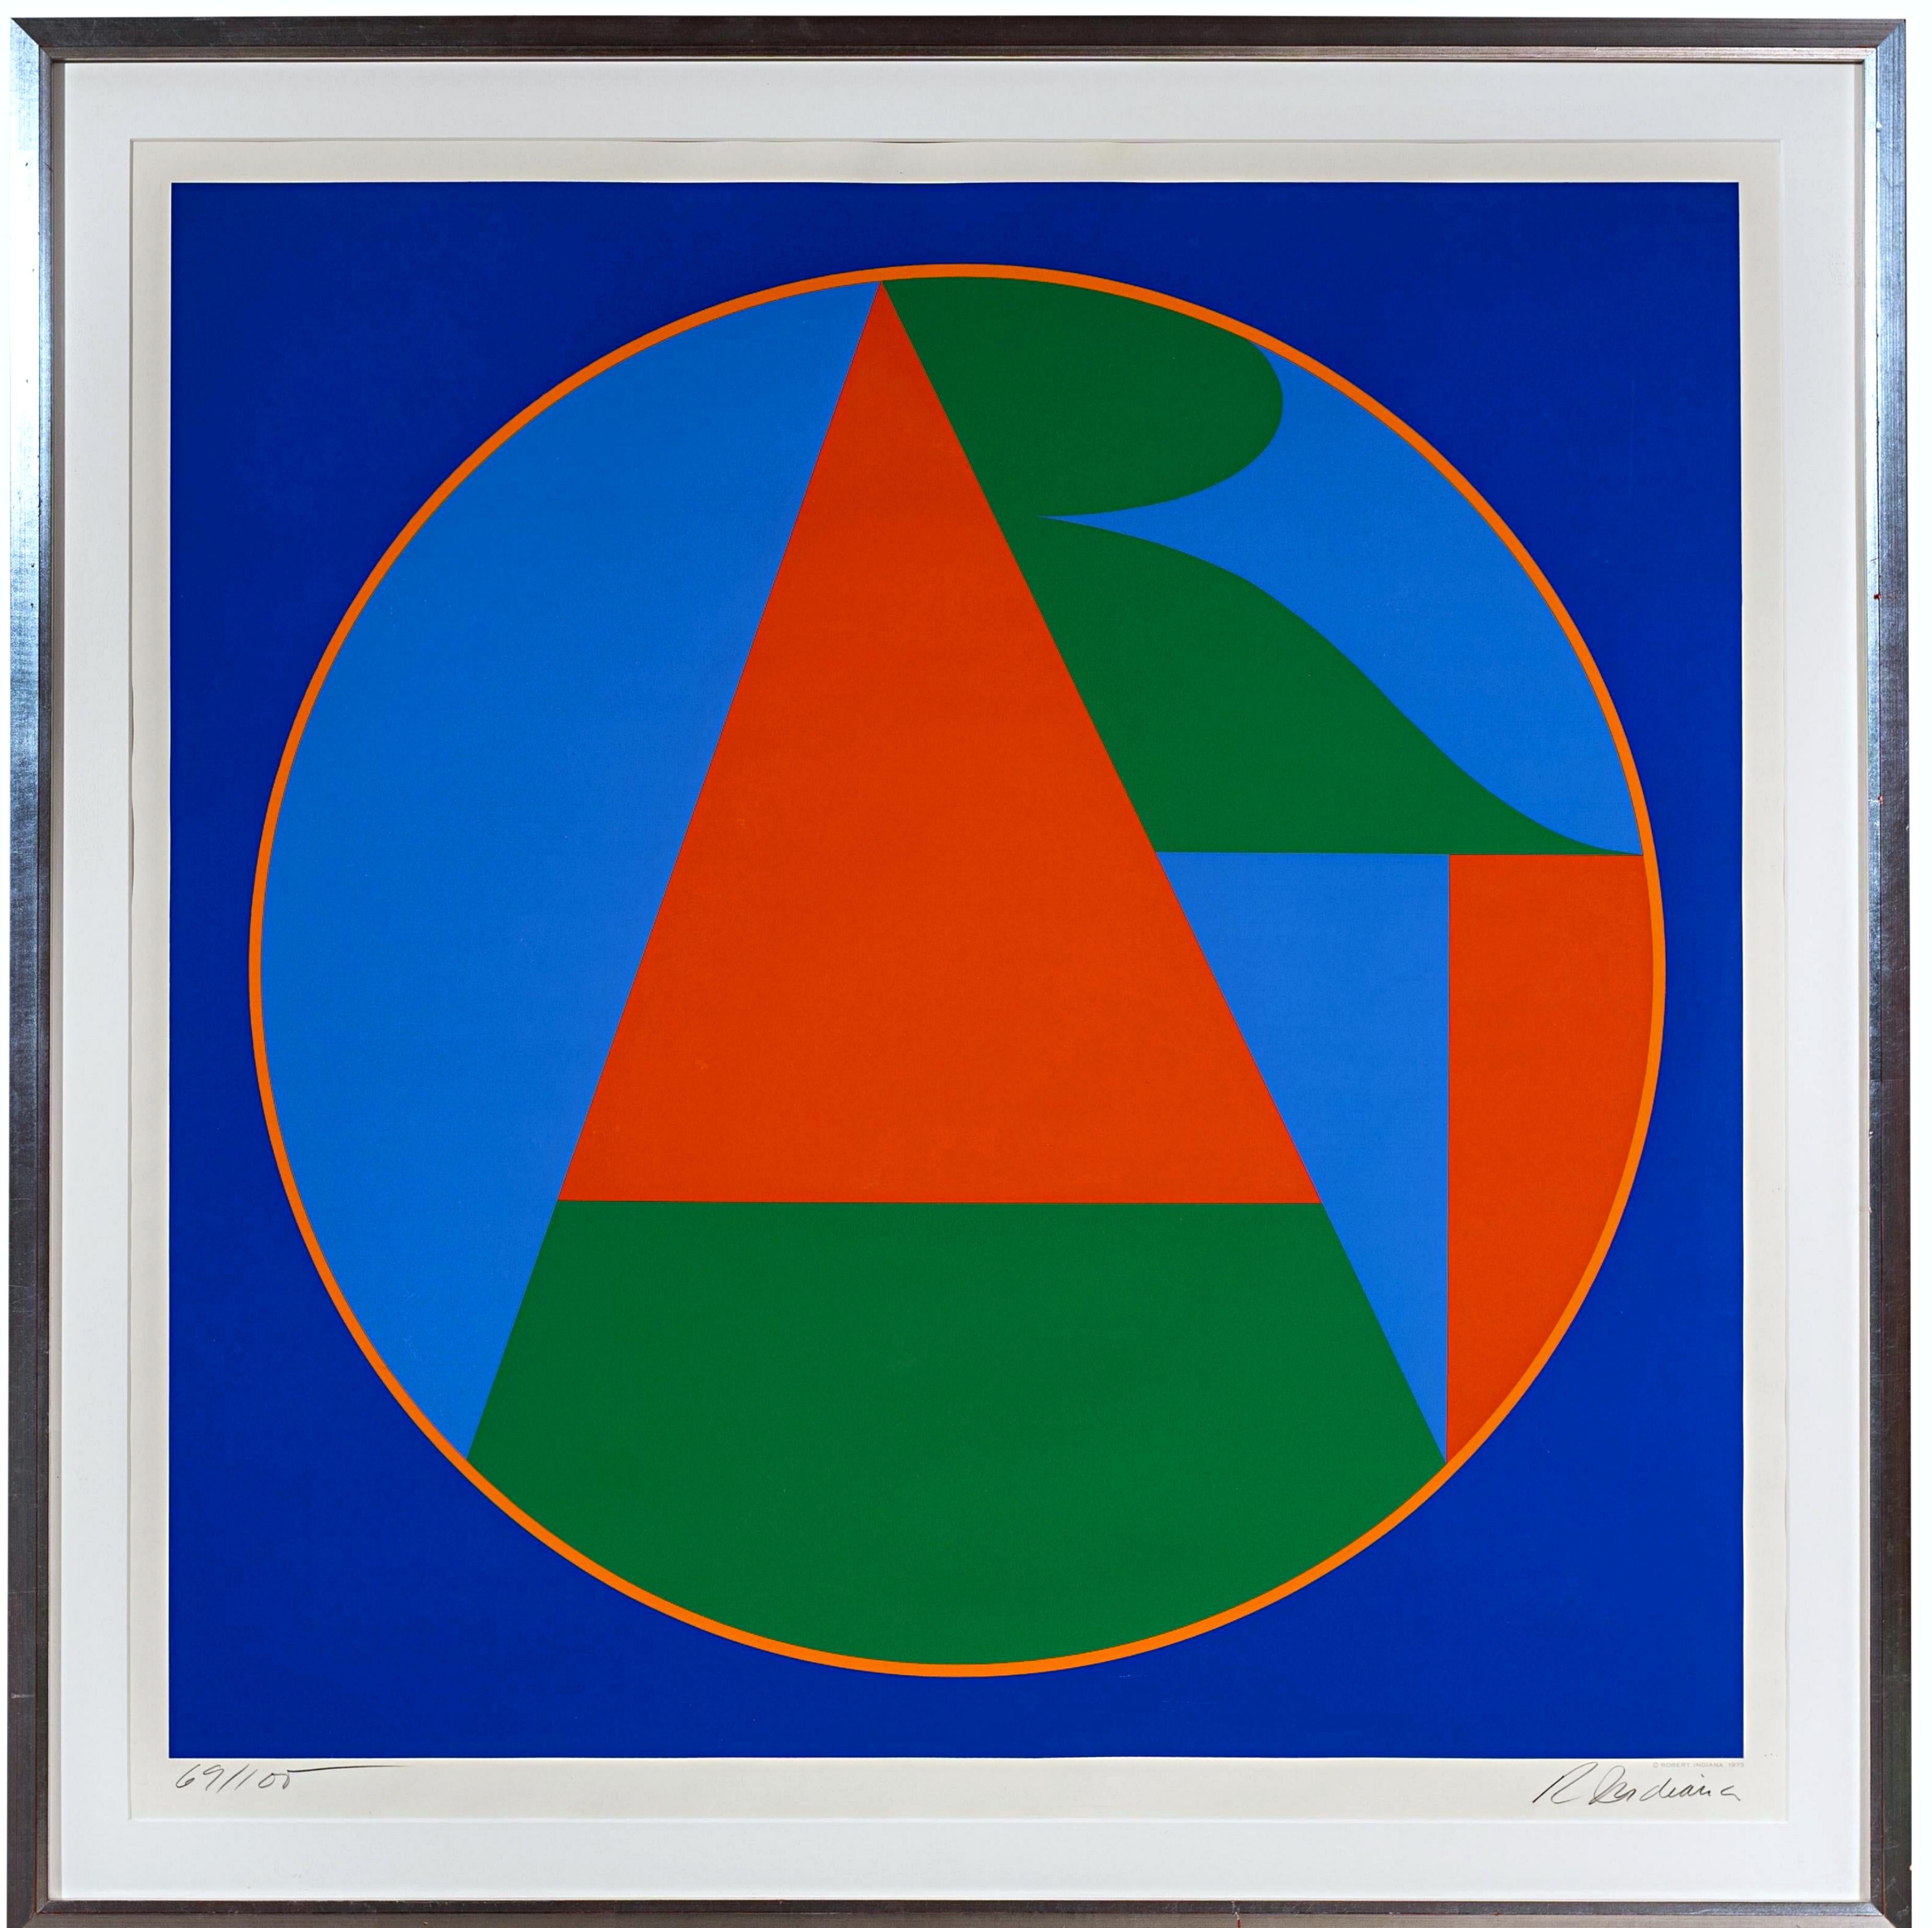 ART (Sheehan, 80) iconique abstraction géométrique des années 1970, lt ed s/n pour Colby College